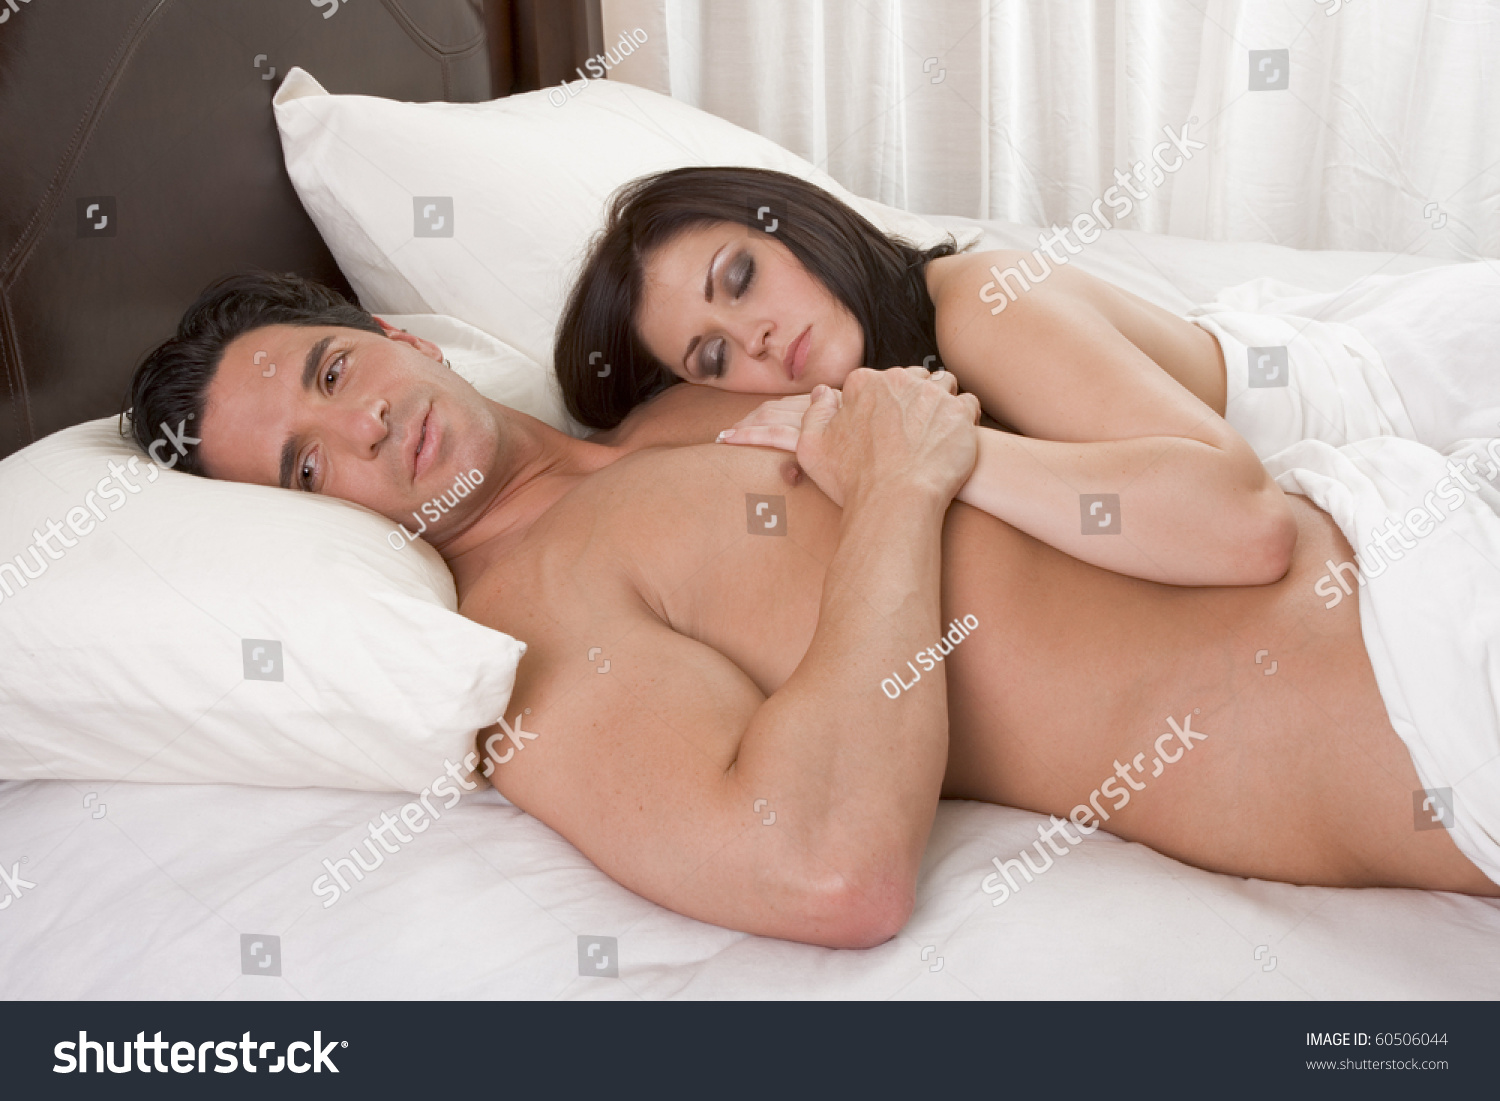 Sleeping Nude Teen On Bed 114